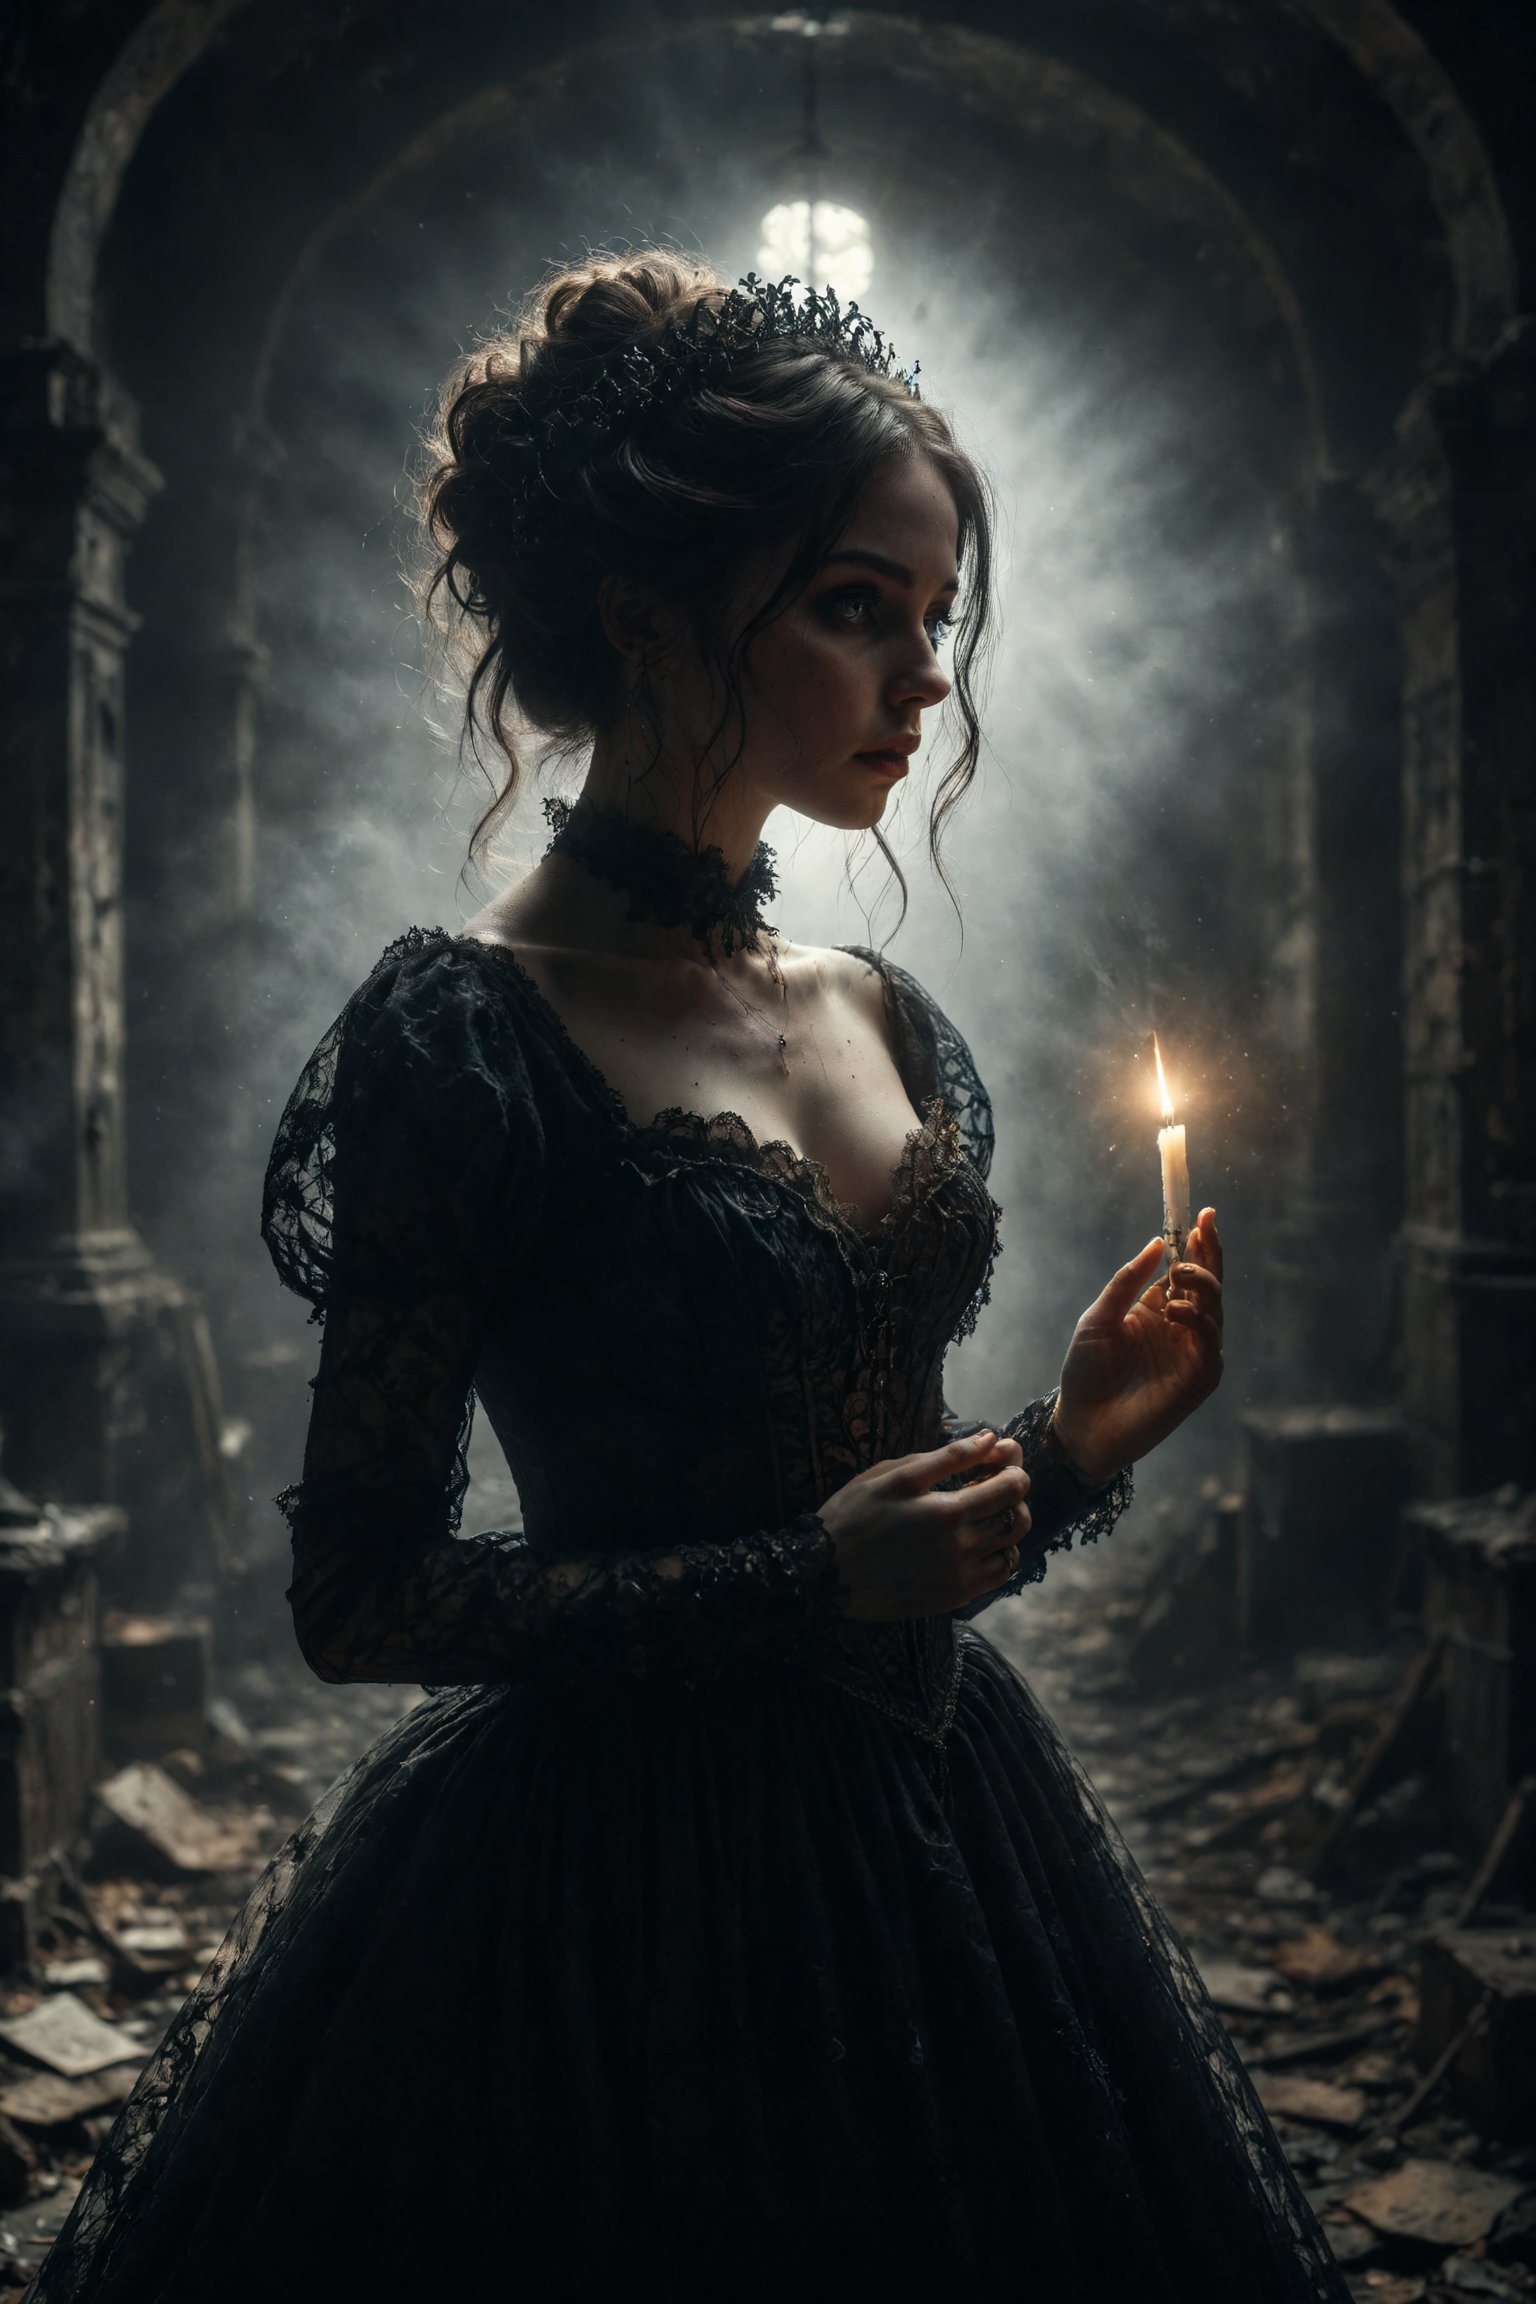 mitica y misteriosa escena gotica de Un espectro de una dama en vestido victoriano, con una luz fría y etérea que irradia desde su presencia fantasmal.